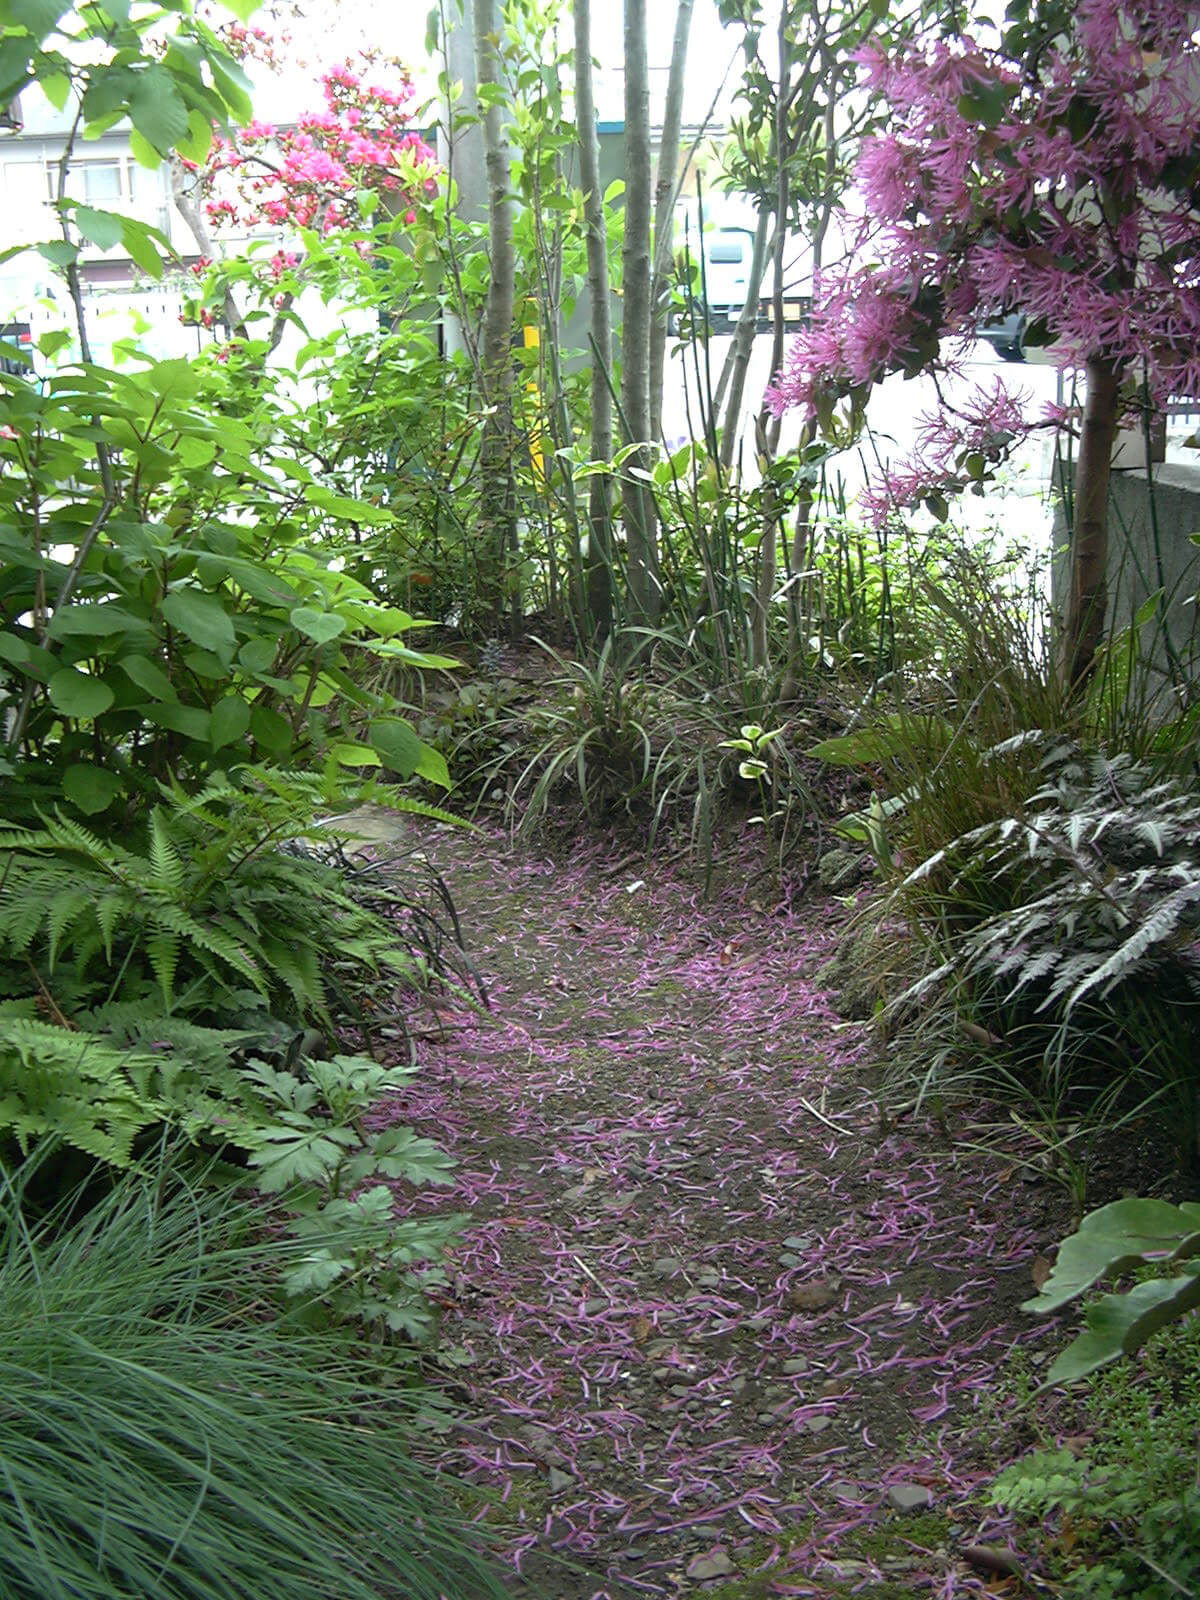 マンサクの花びらが散って路地庭がピンクに染まりました